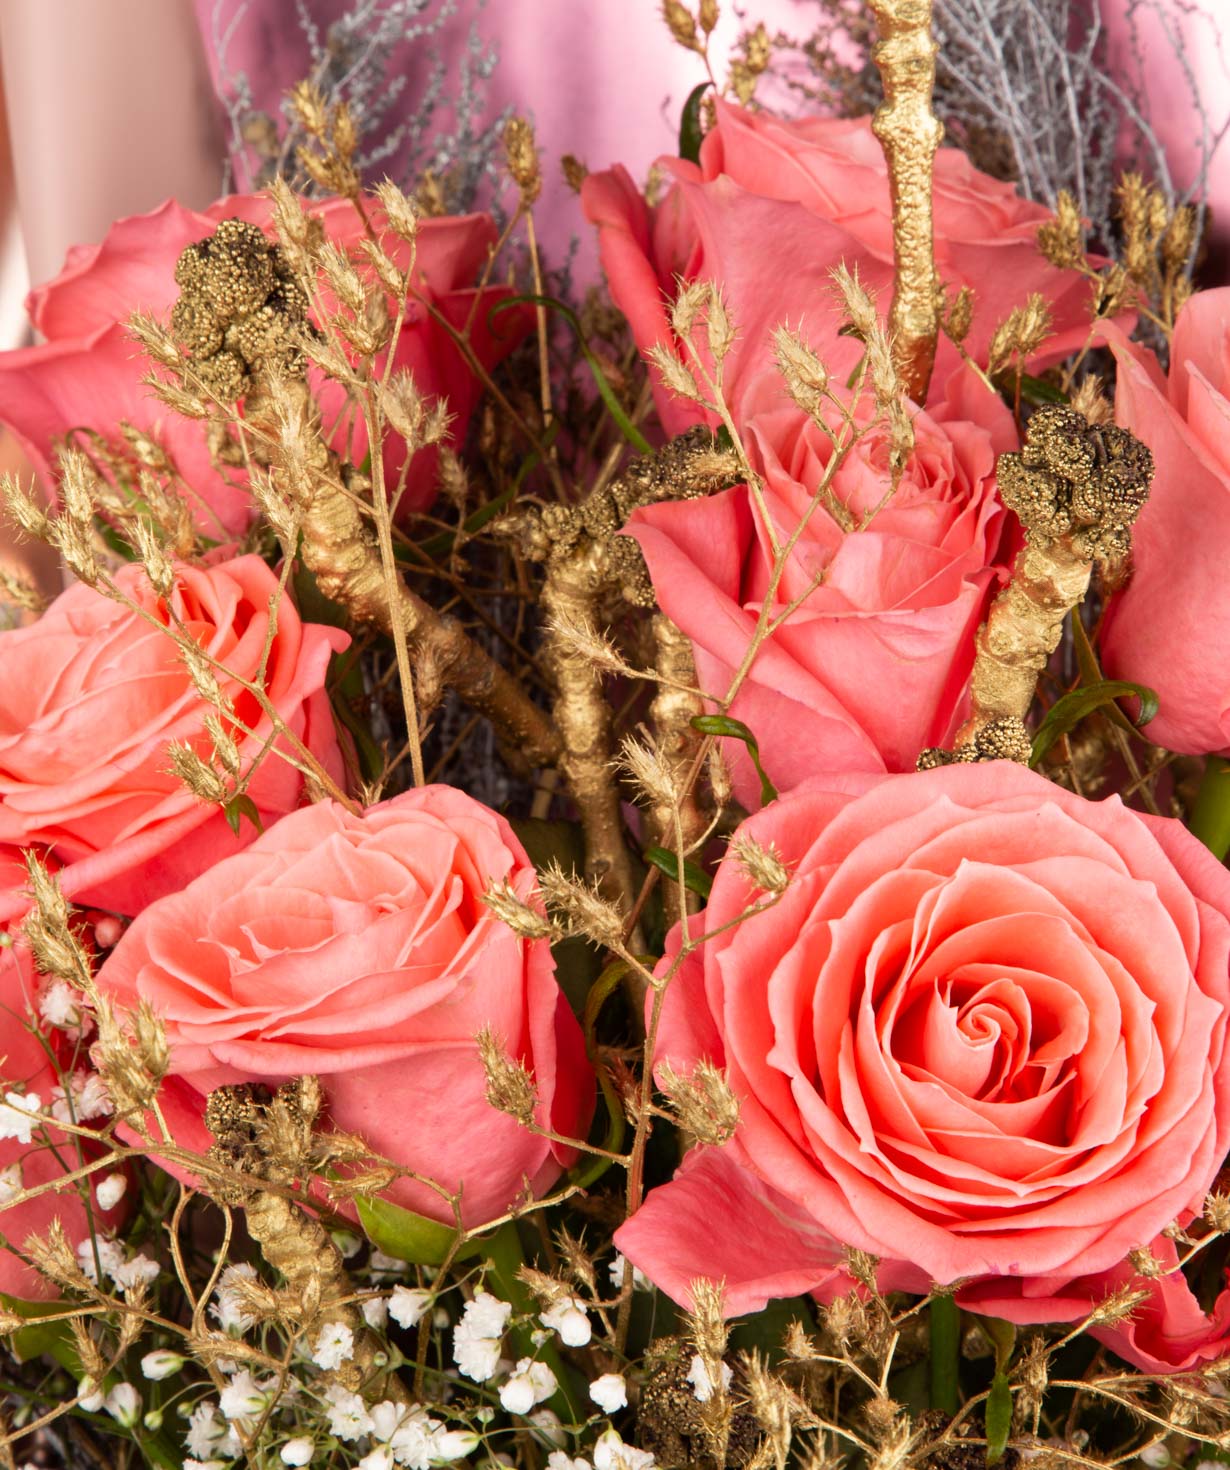 Ծաղկեփունջ «Գլասգո» վարդերով և չորածաղիկներով